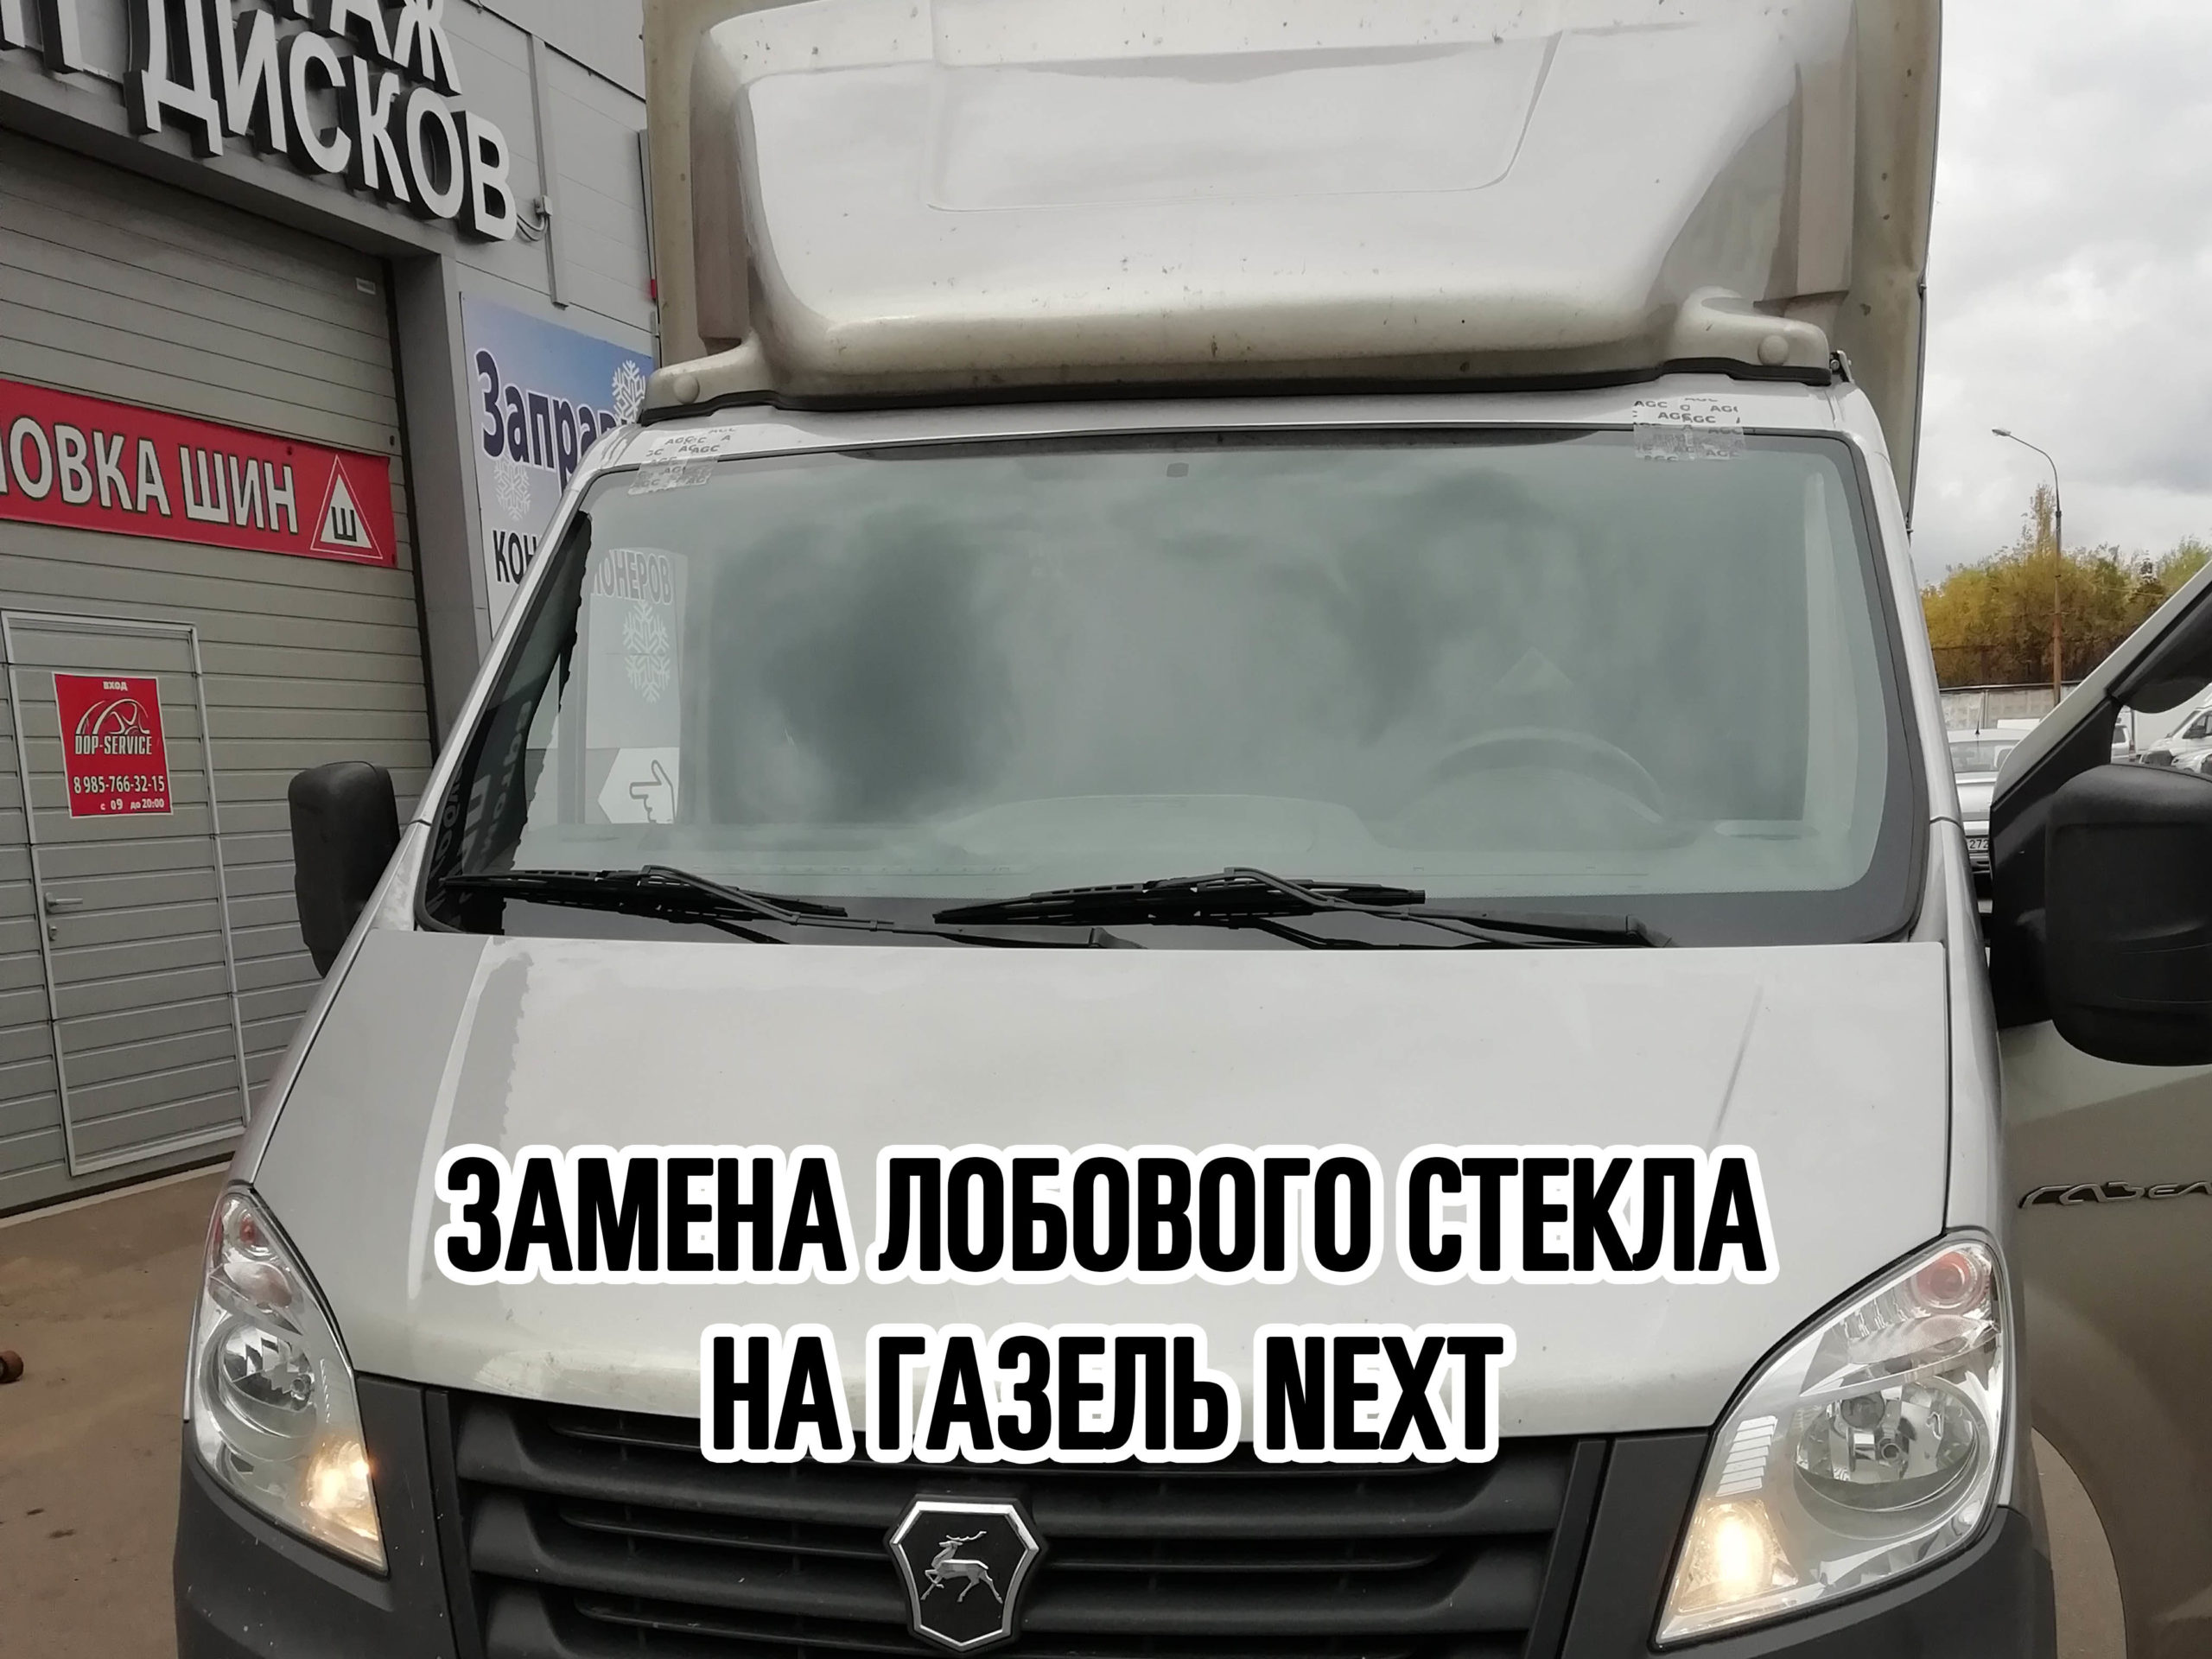 Замена лобового стекла ГАЗ Газель - установка лобового автостекла на ГАЗ Газель в Москве